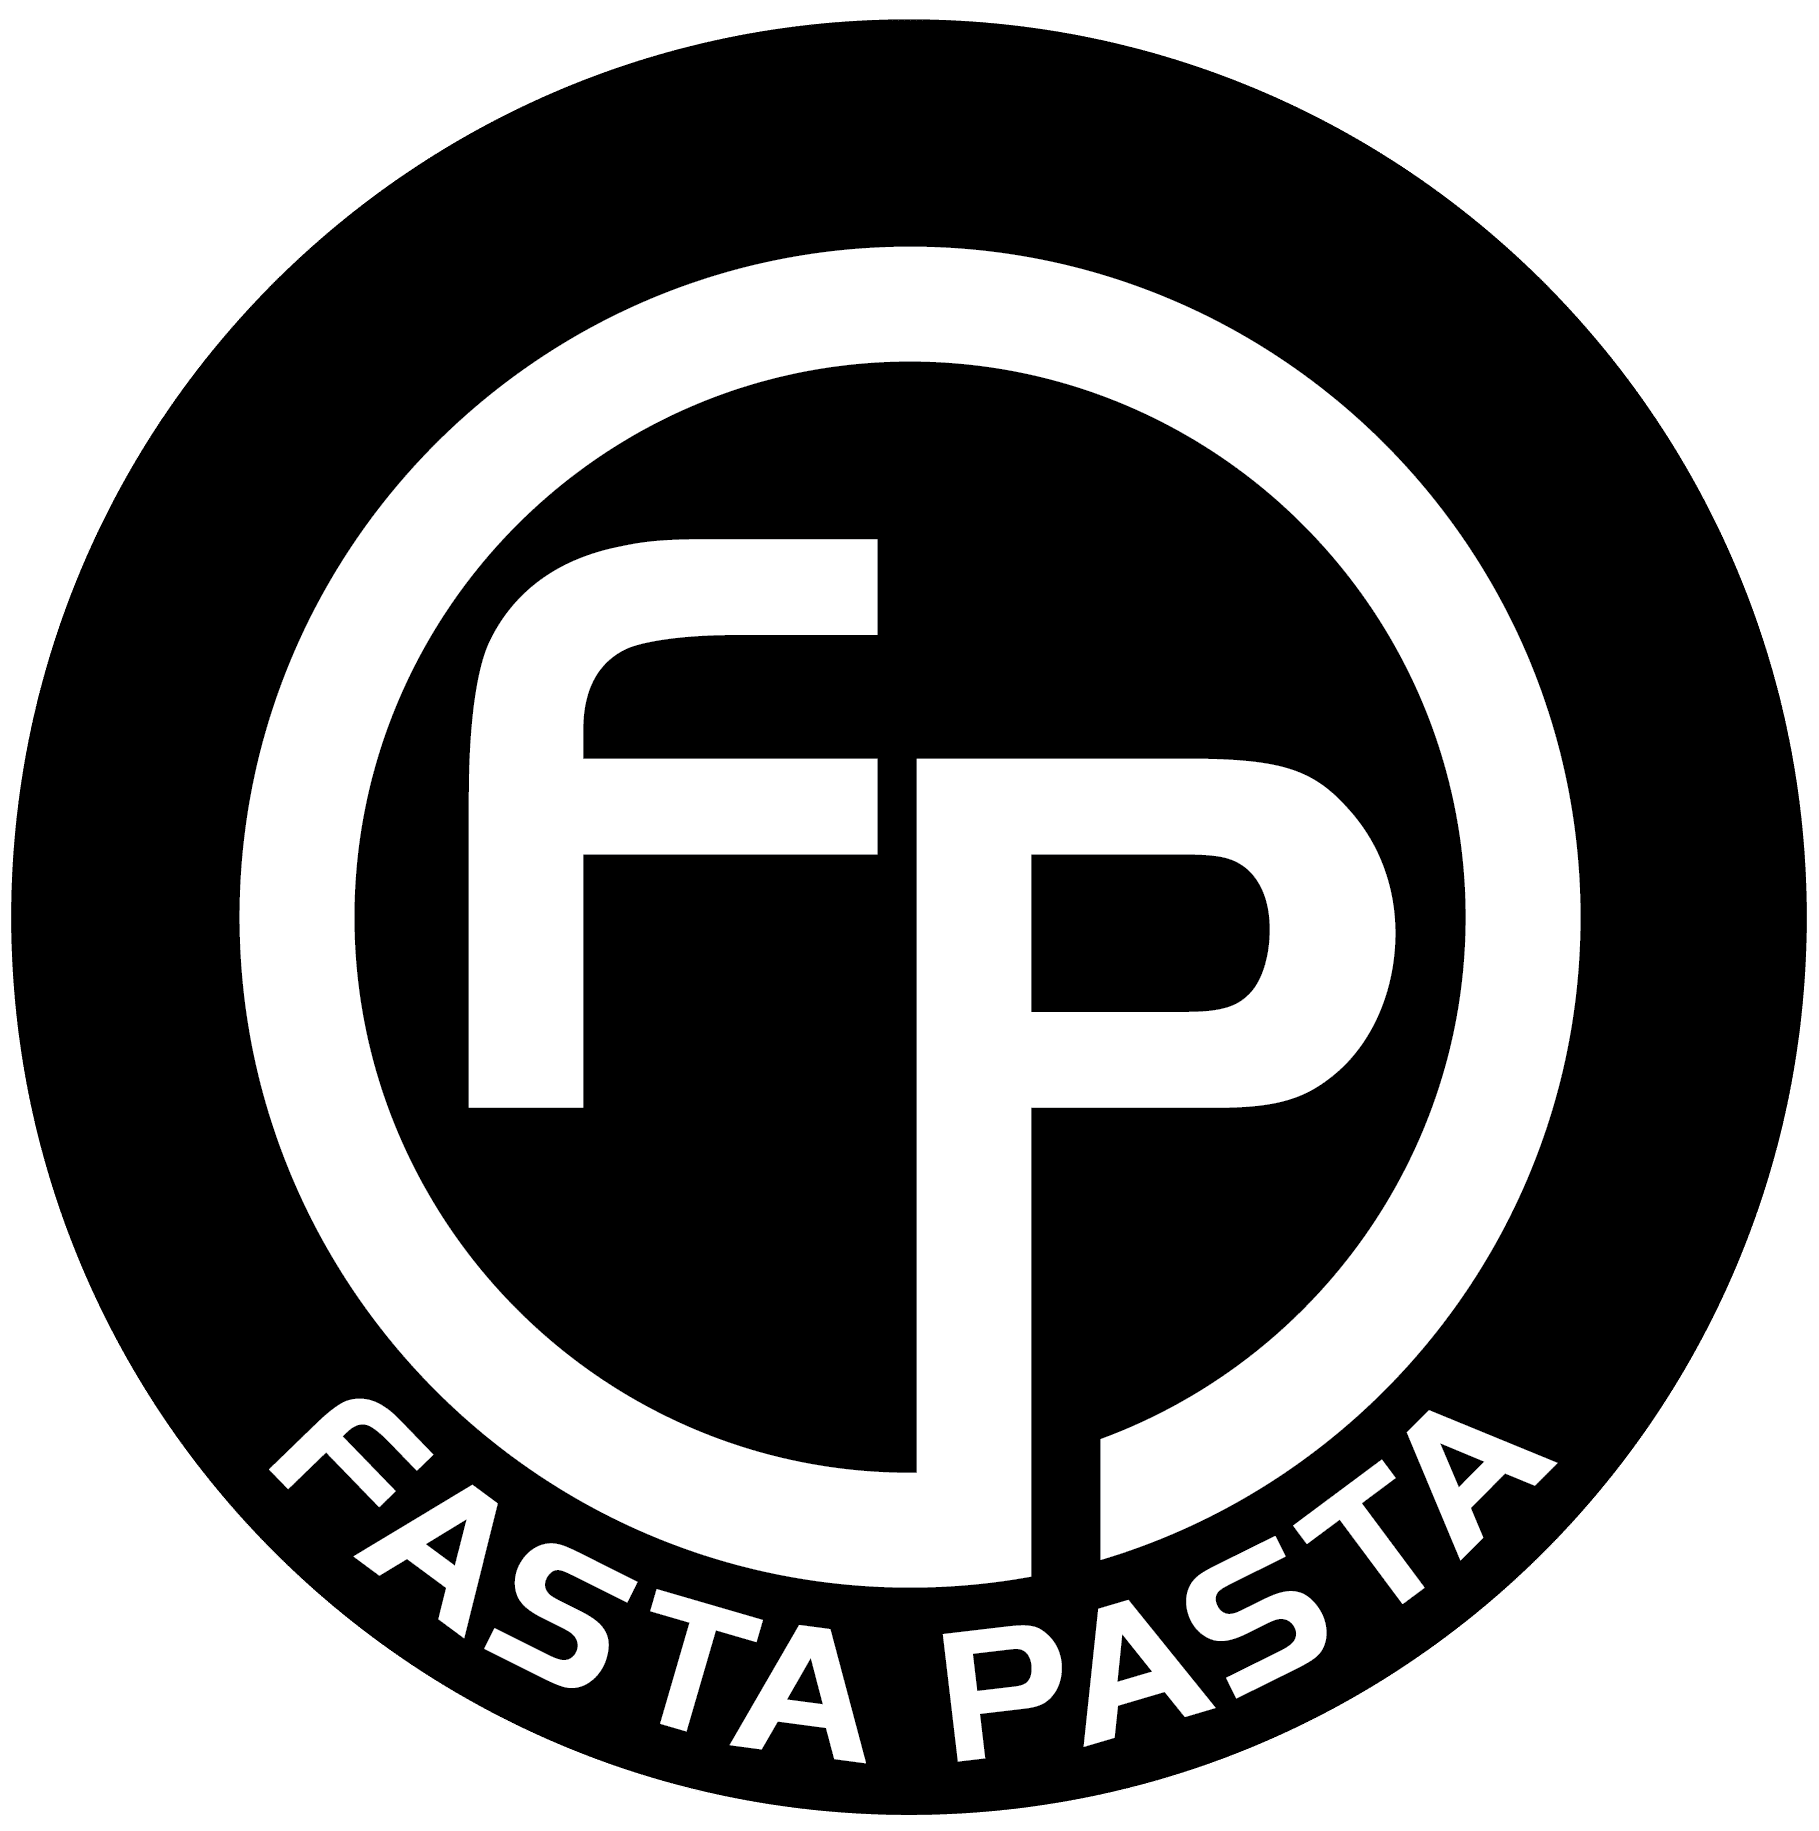 Fasta Pasta logo